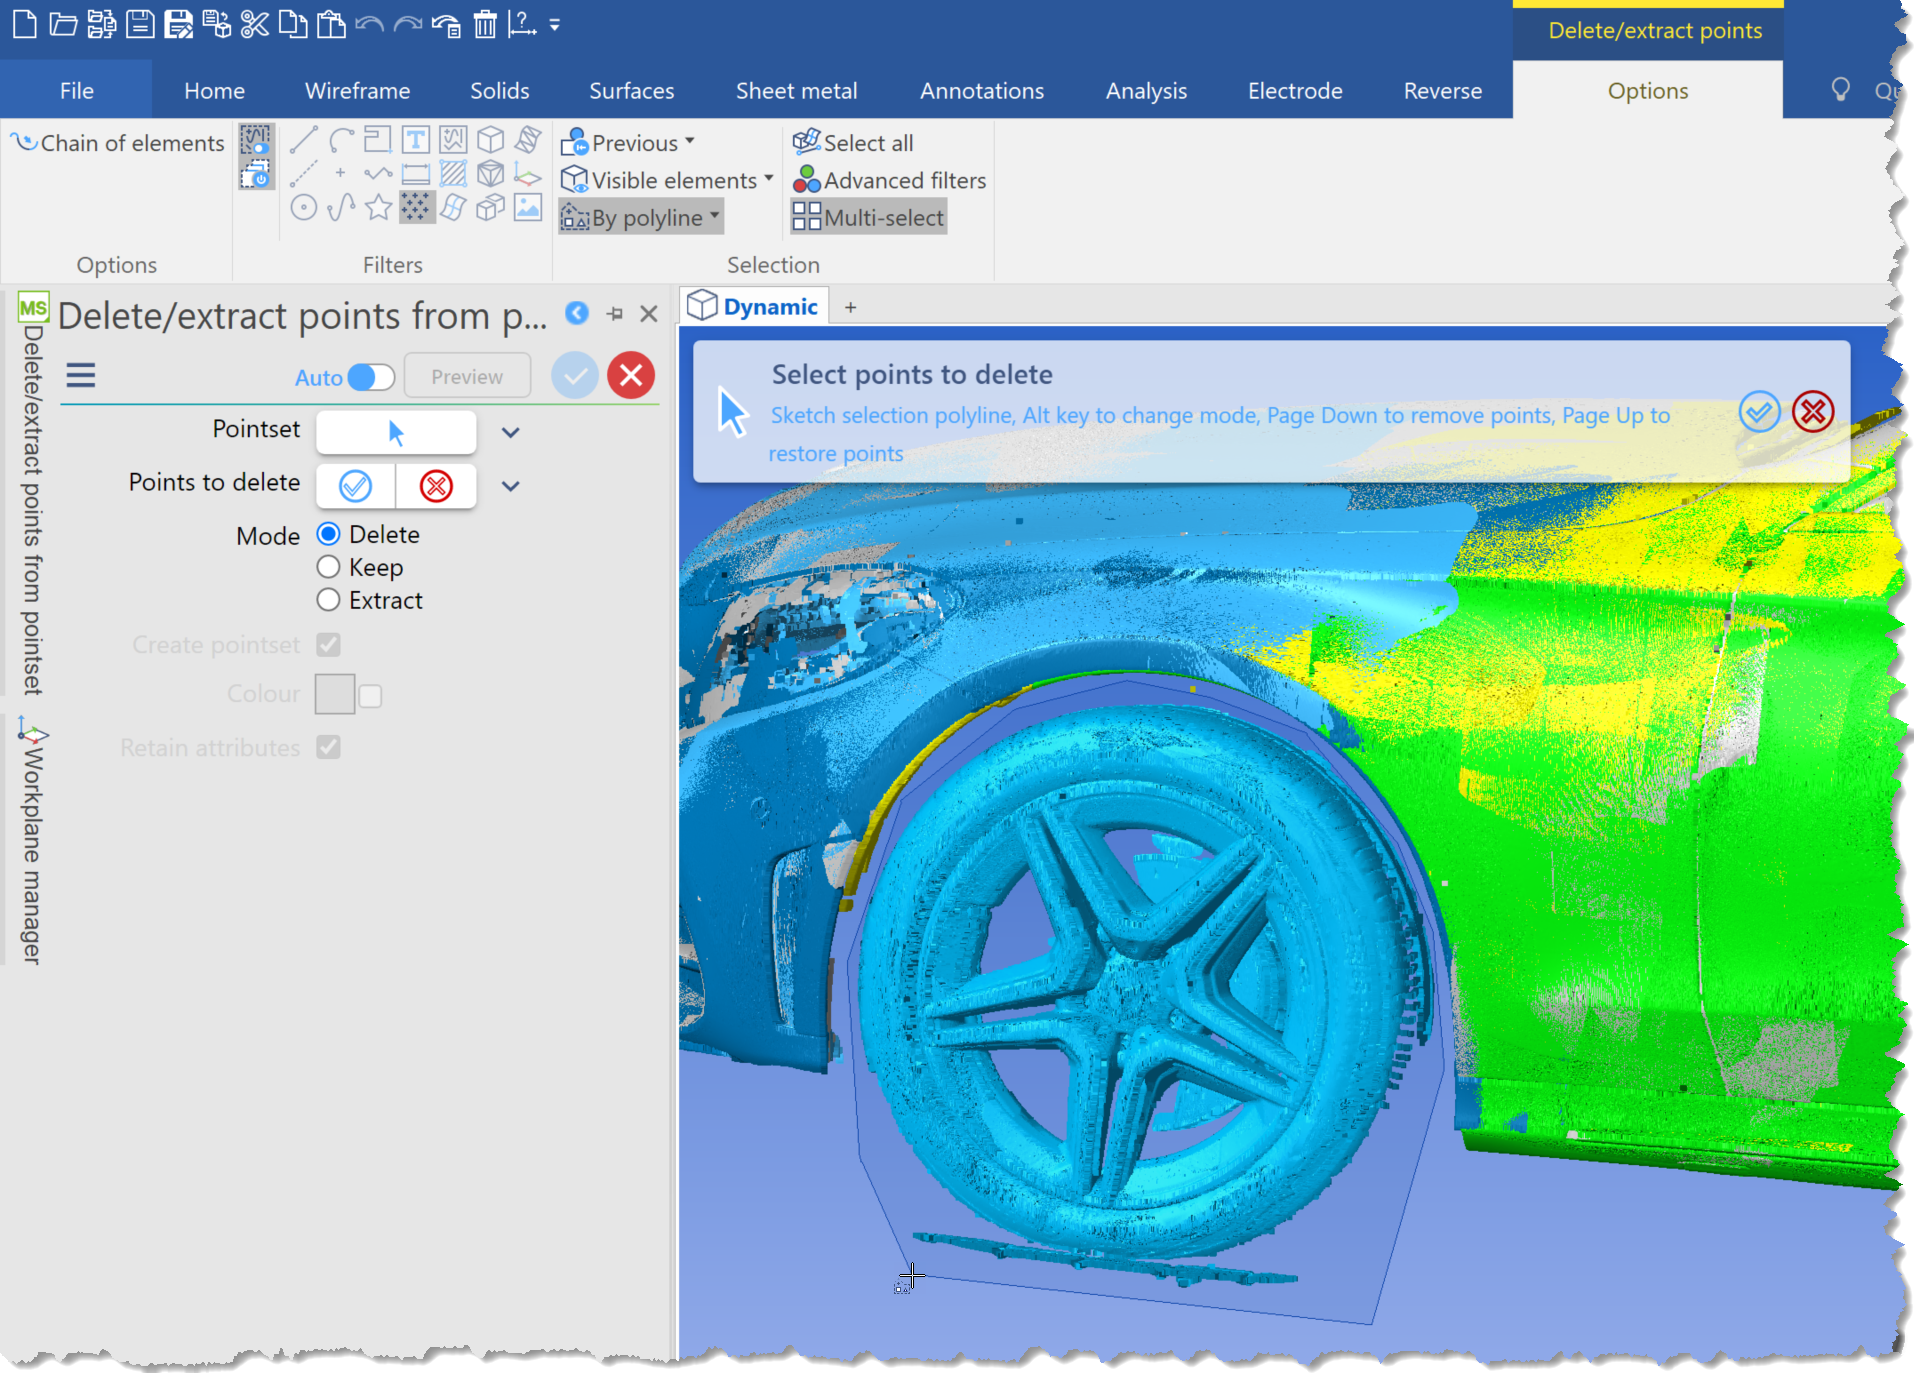 Obraz oprogramowania do inżynierii odwrotnej przedstawia porównanie CAD z Modelem Siatkowym